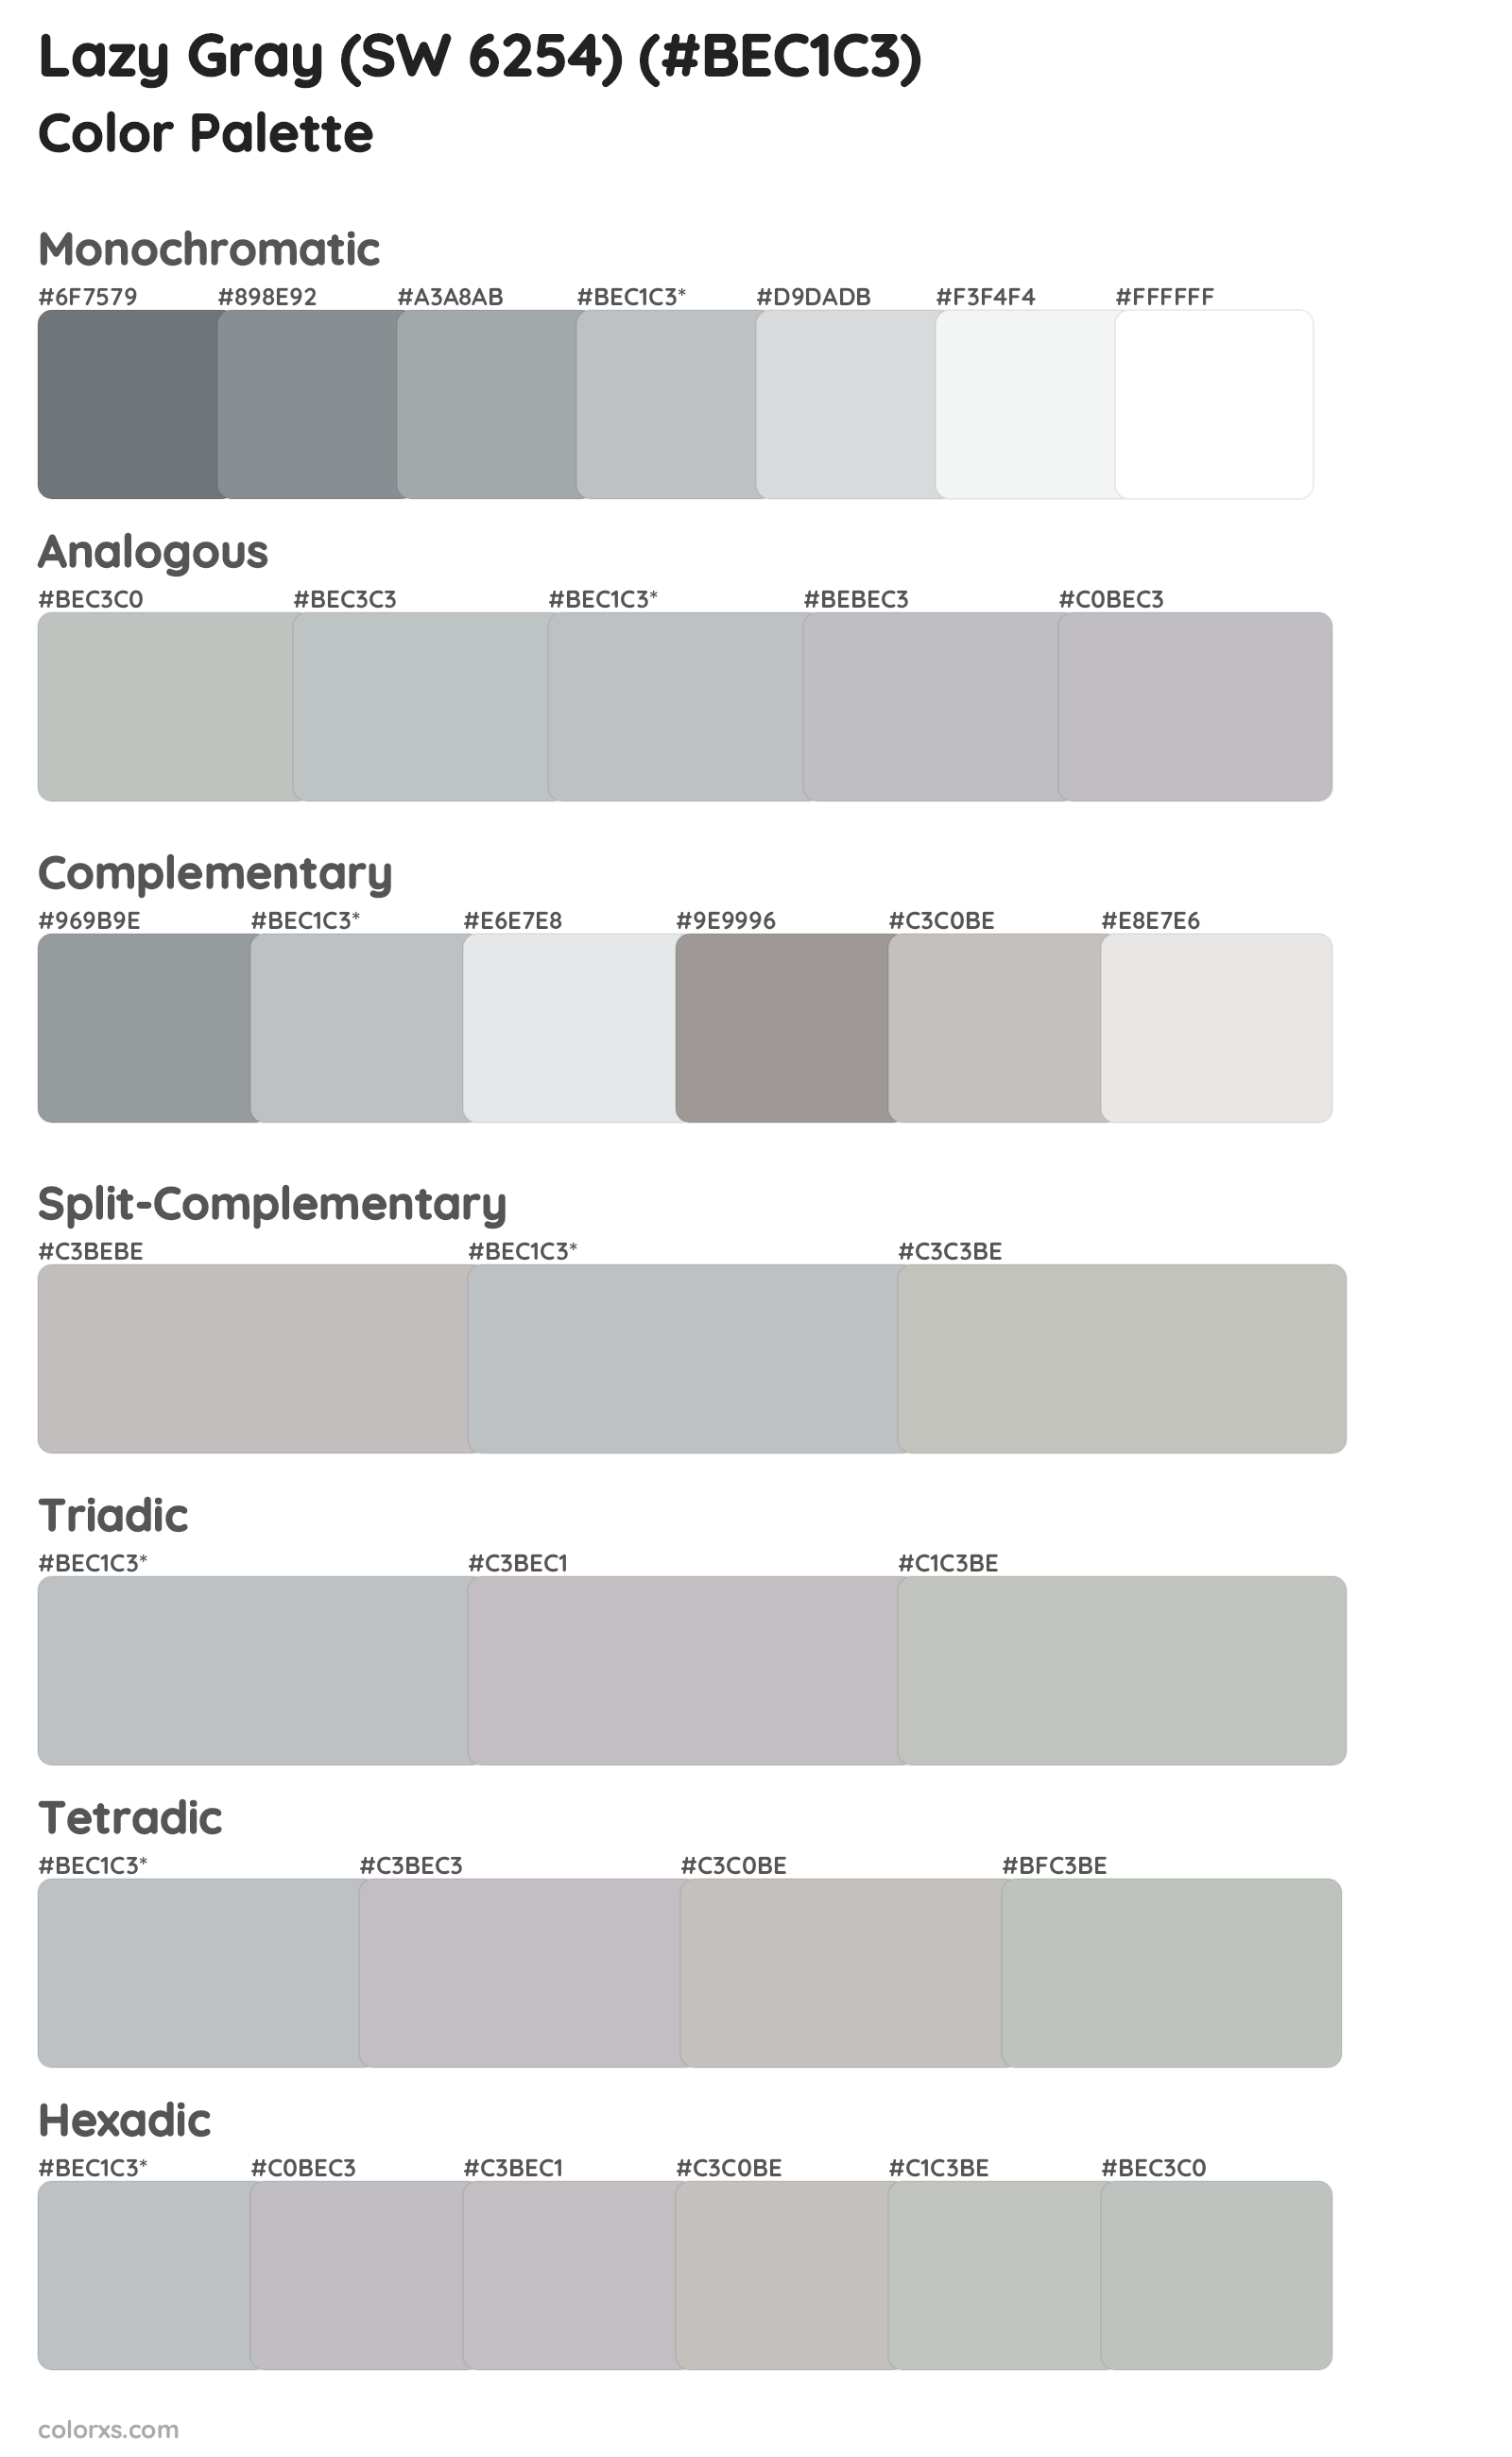 Lazy Gray (SW 6254) Color Scheme Palettes